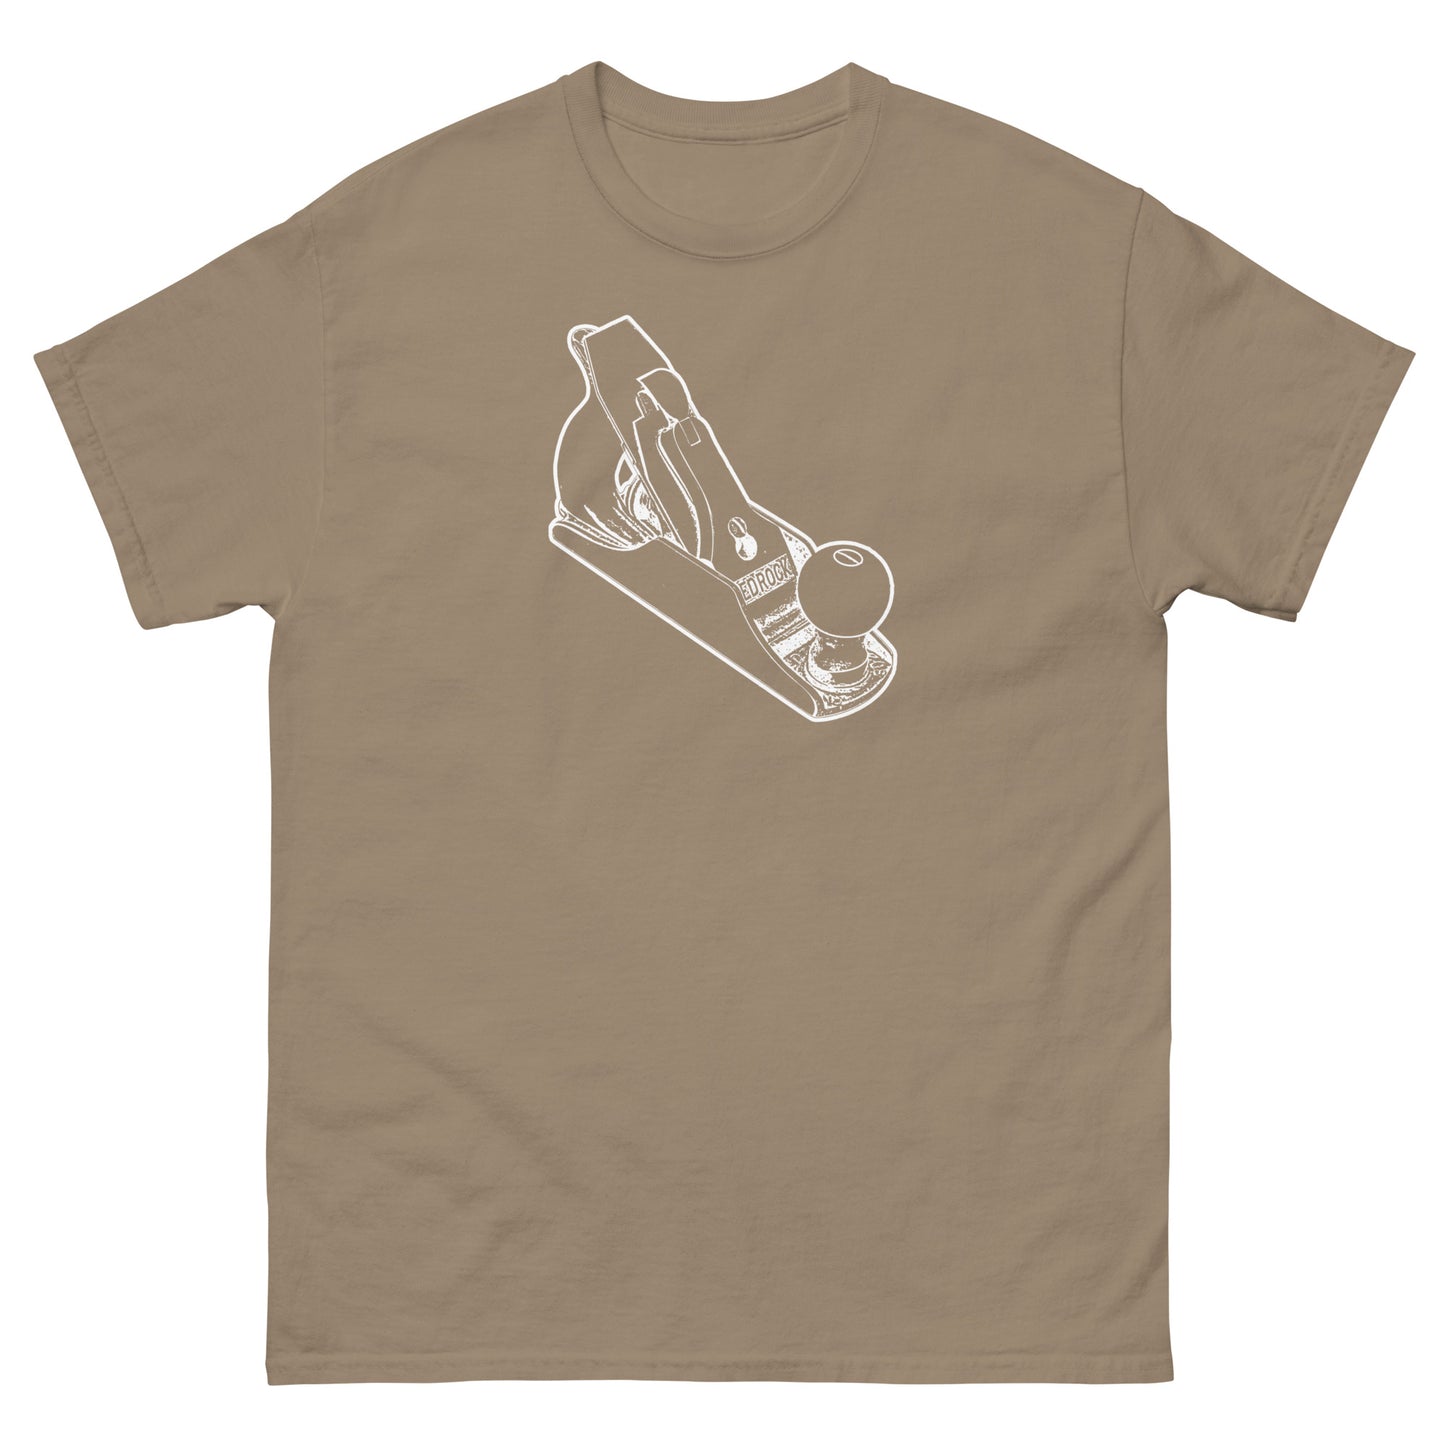 Bedrock Handplane Woodworking T-Shirt (Multiple Colors)